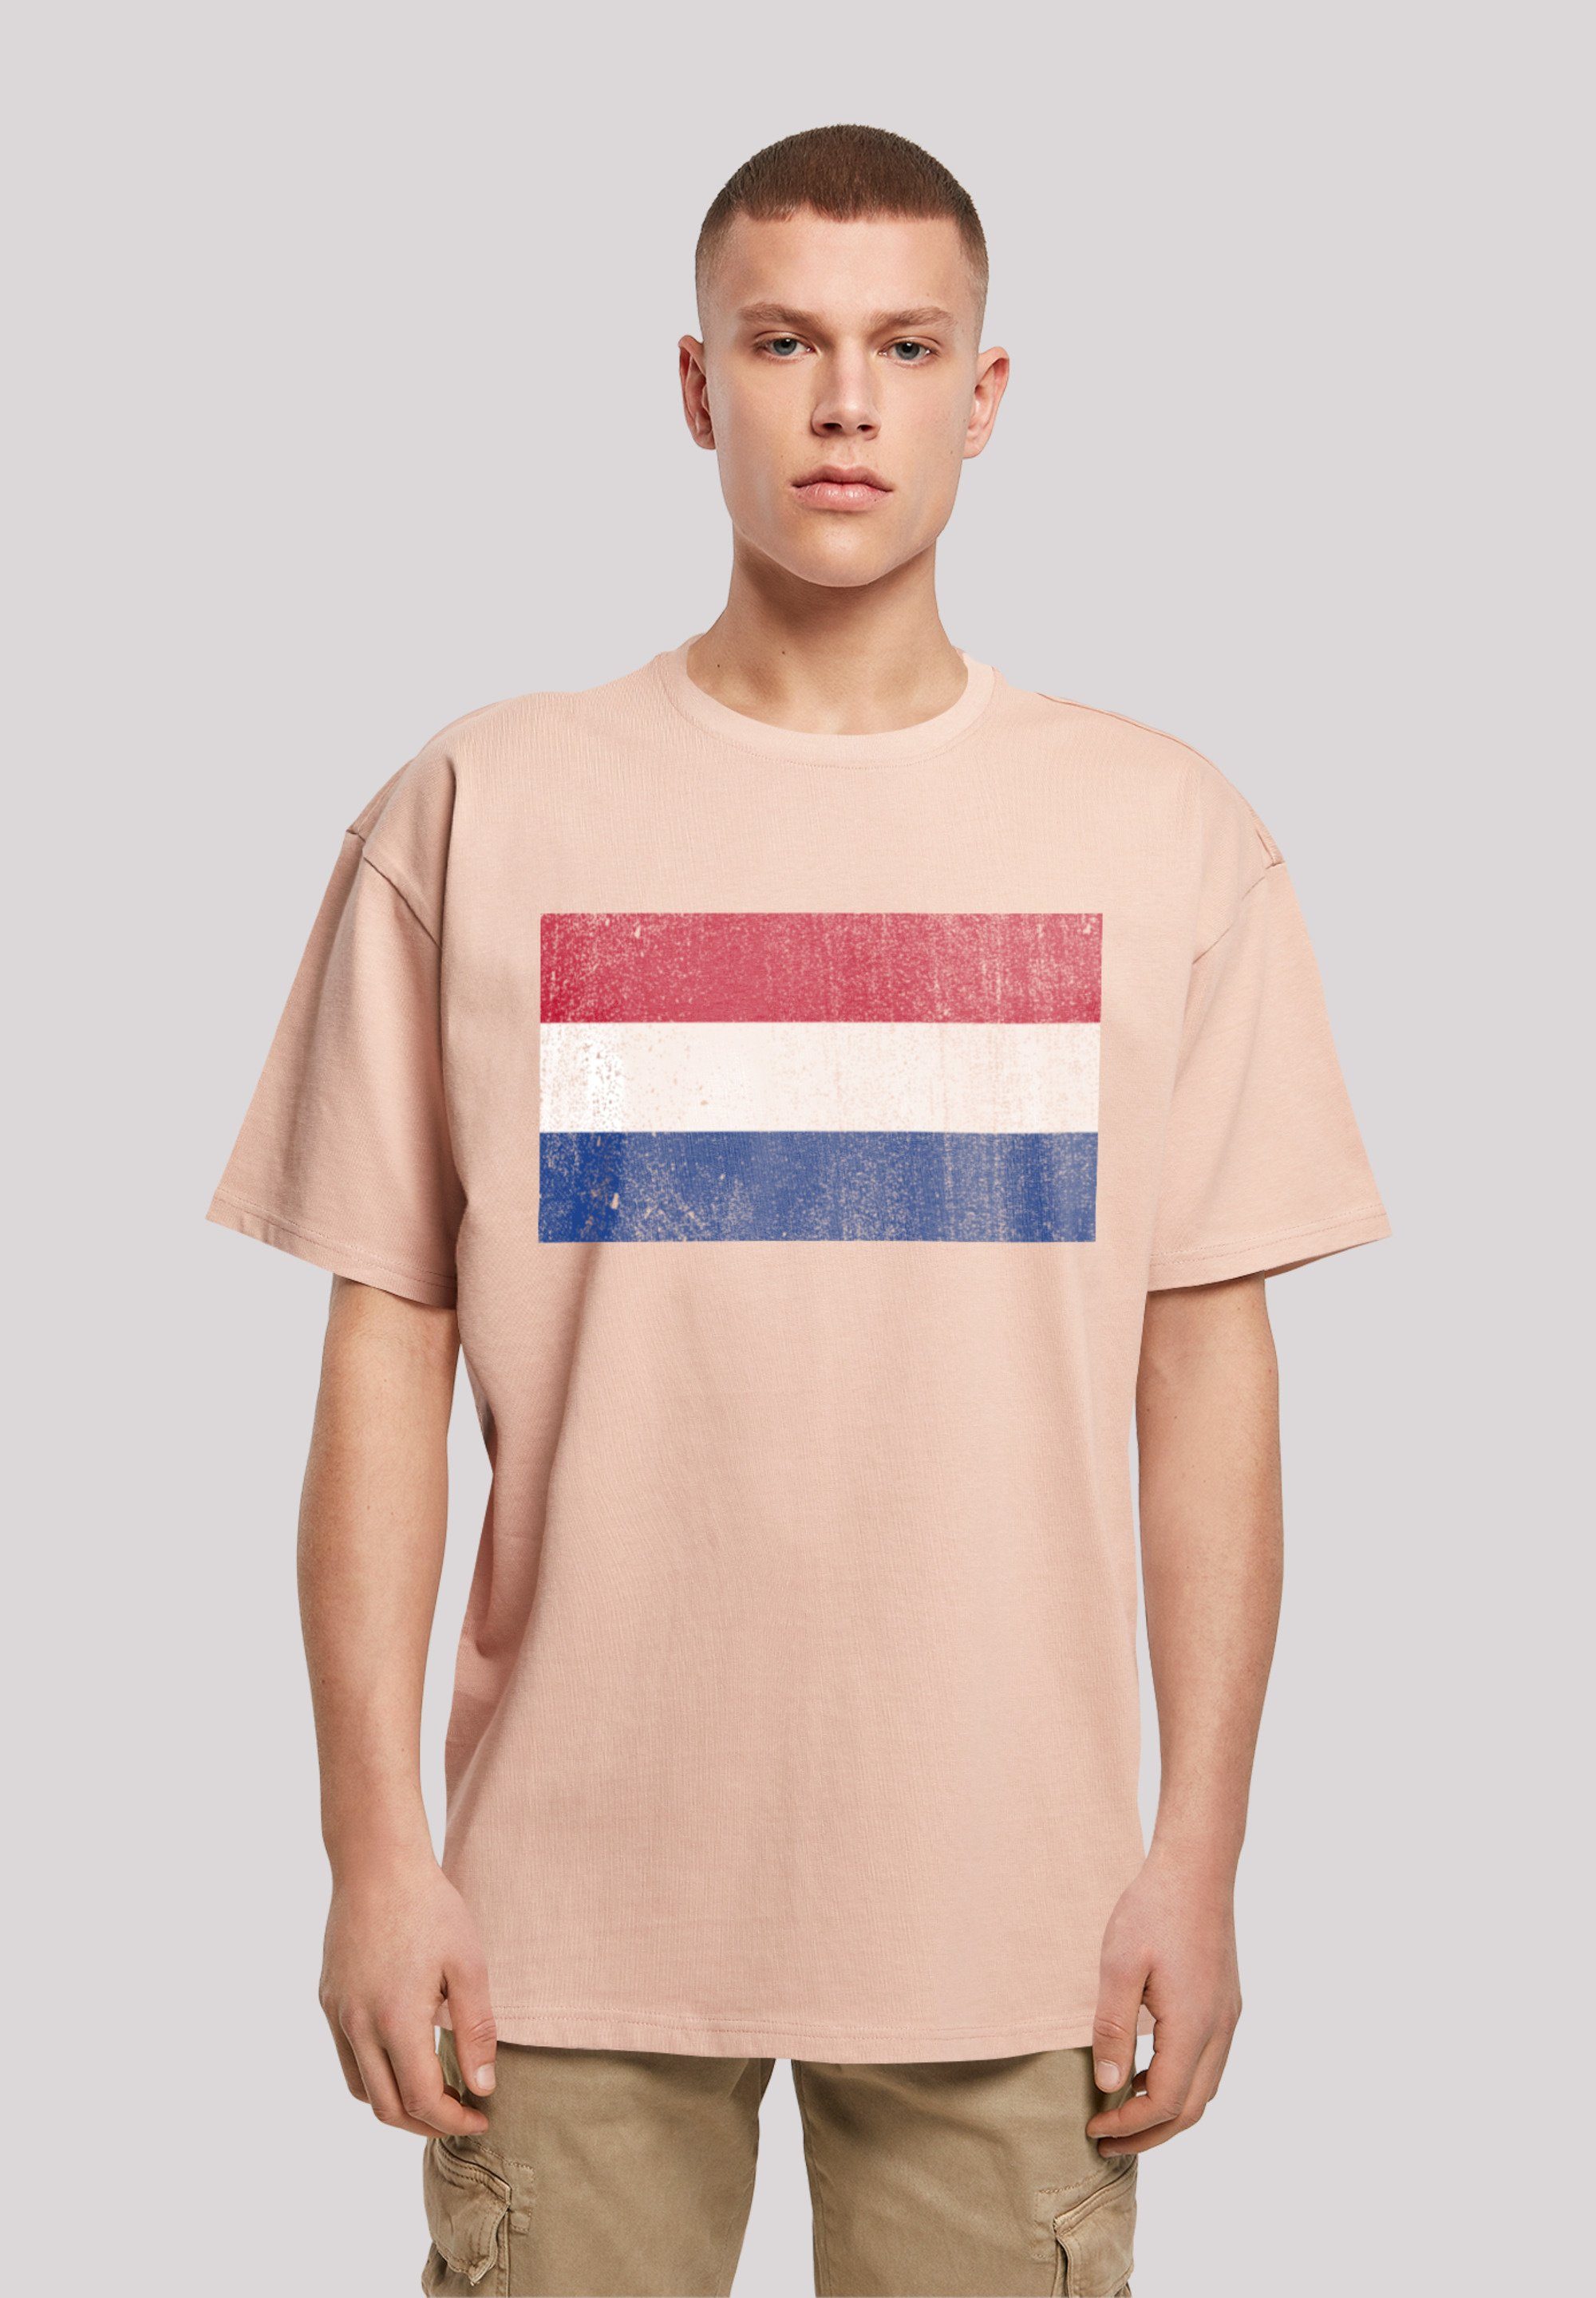 Weite distressed und NIederlande Print, Schultern überschnittene Passform T-Shirt F4NT4STIC Flagge Holland Netherlands